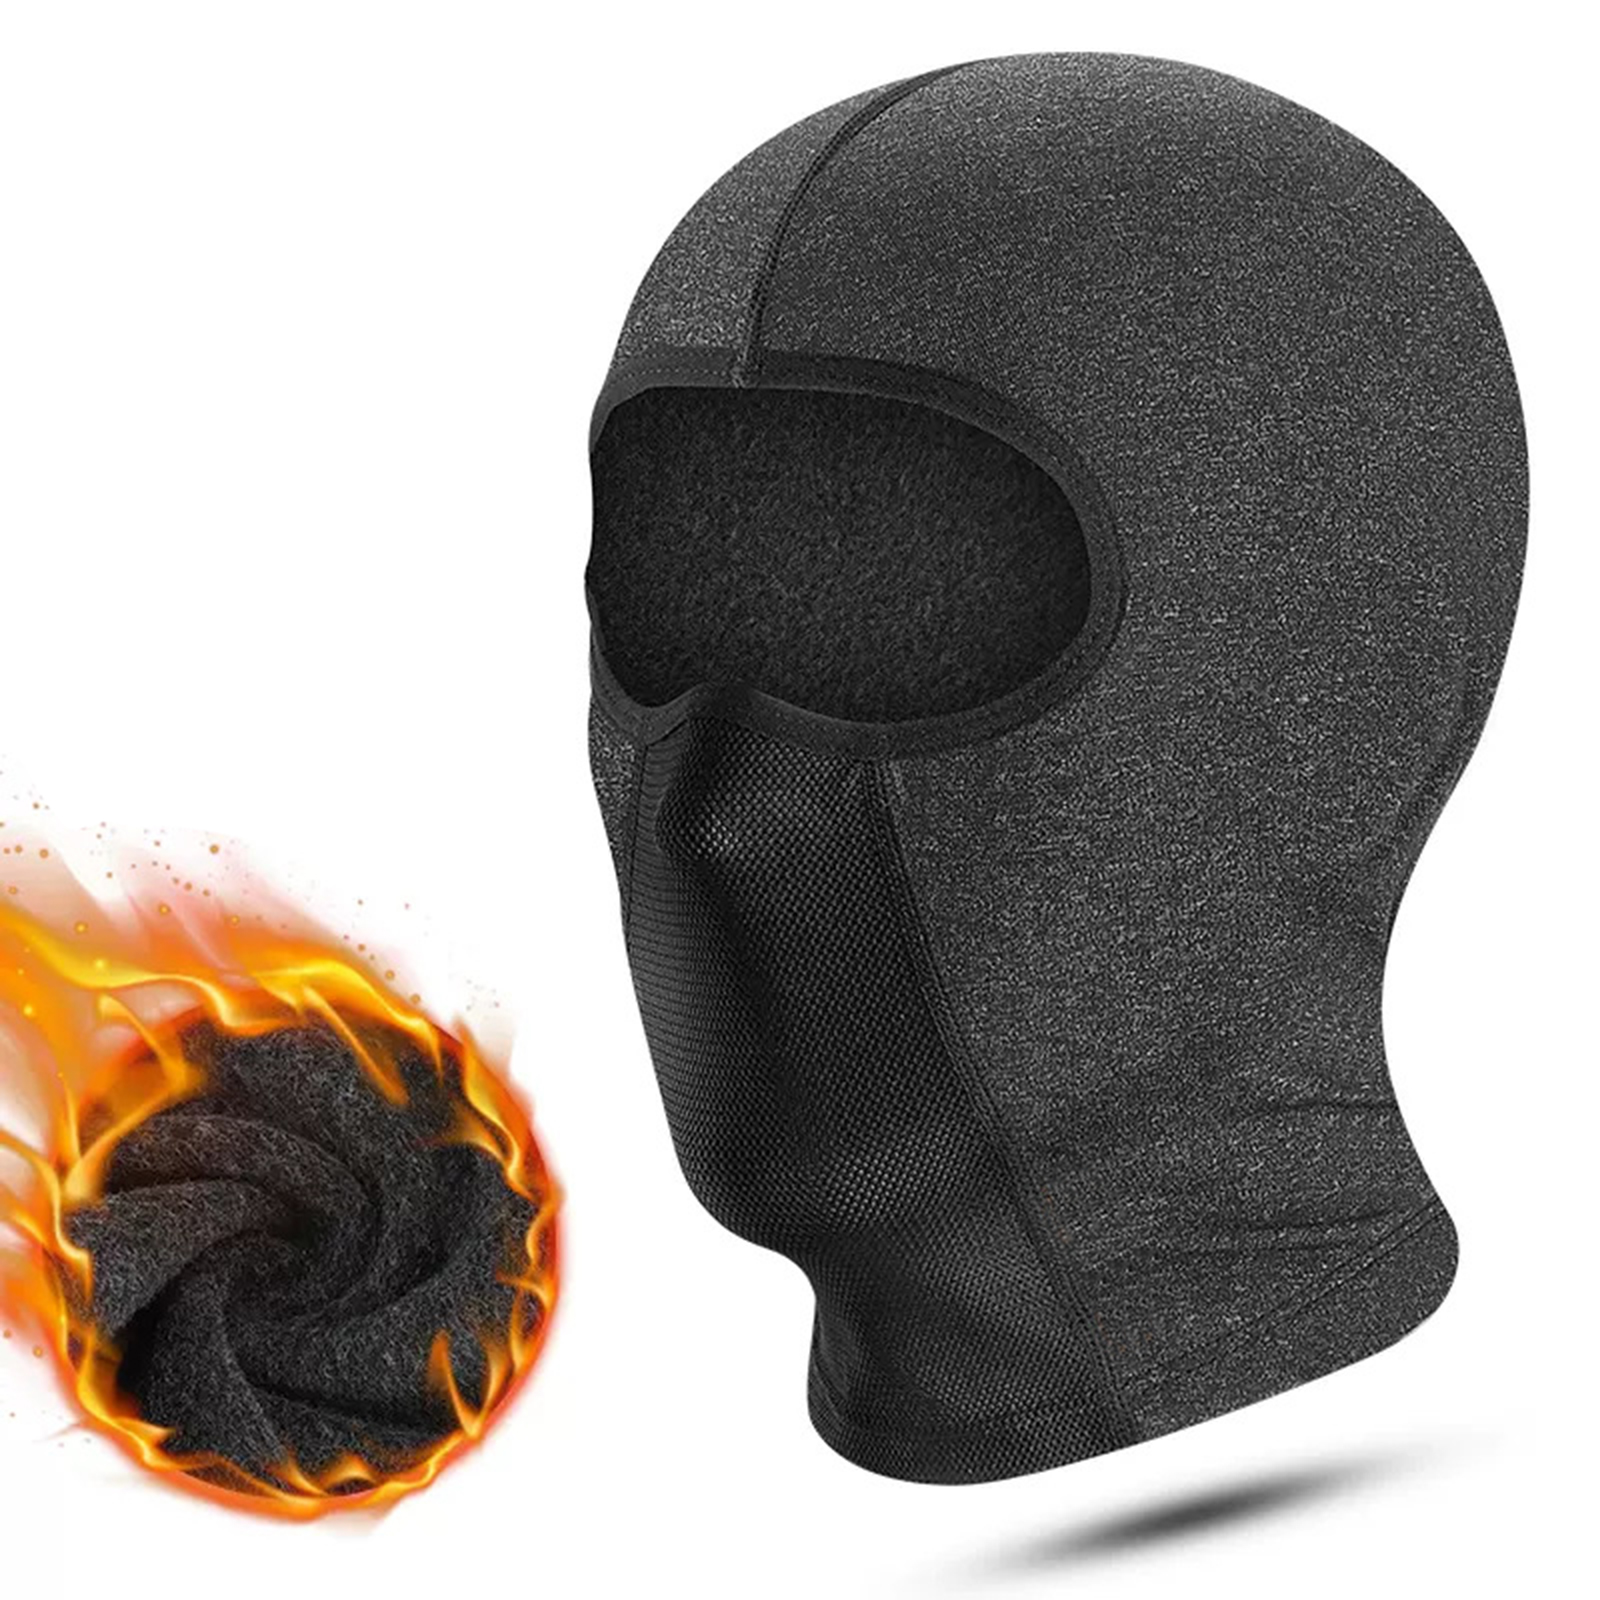 Motorcycle Full Face Mask Winter Warm Helmet For Men Women Cycling Motorbike Windproof Scarf Headgear Mask